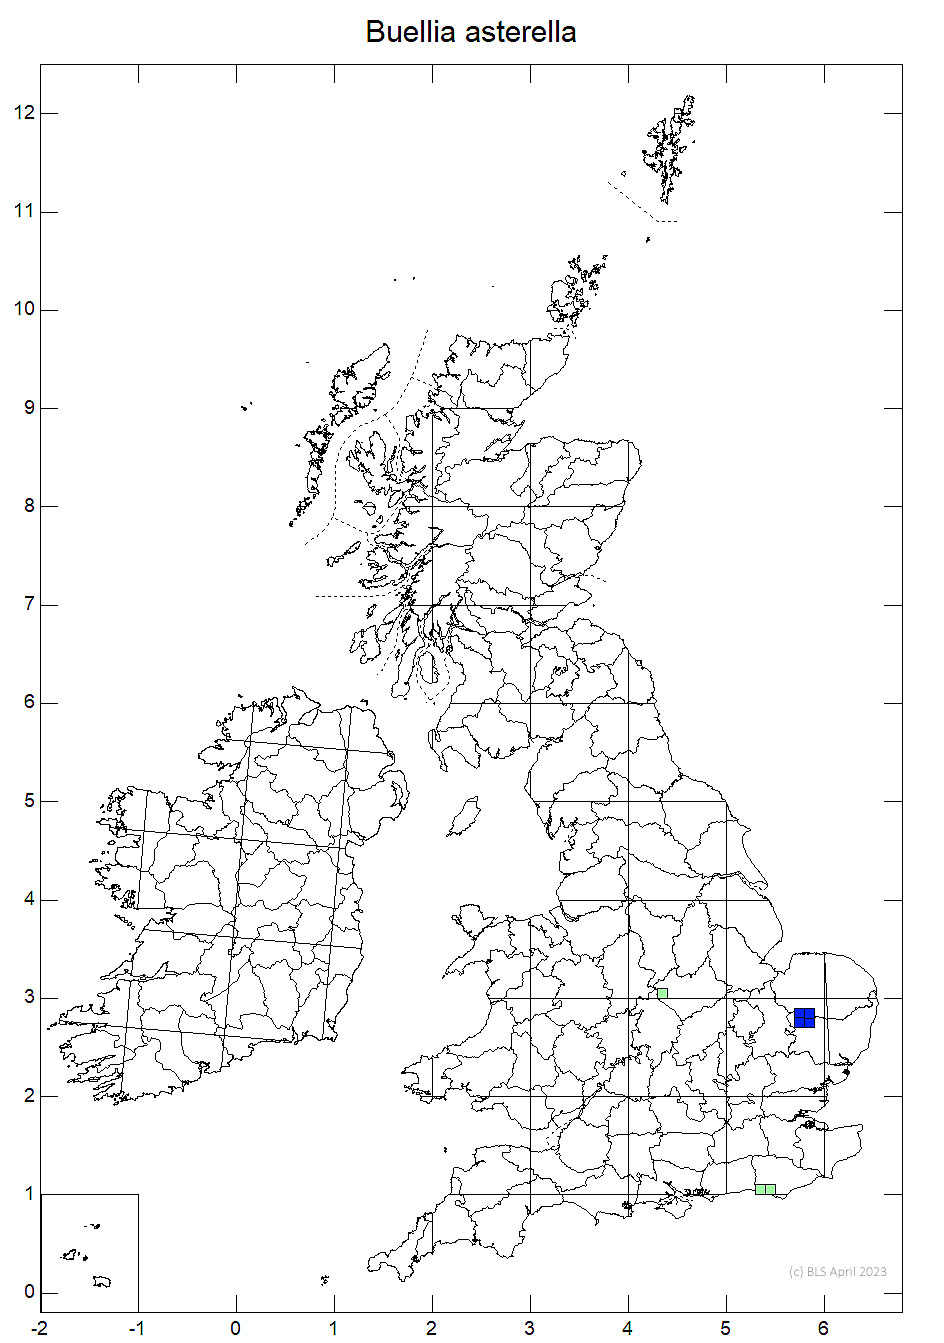 Buellia asterella 10km sq distribution map